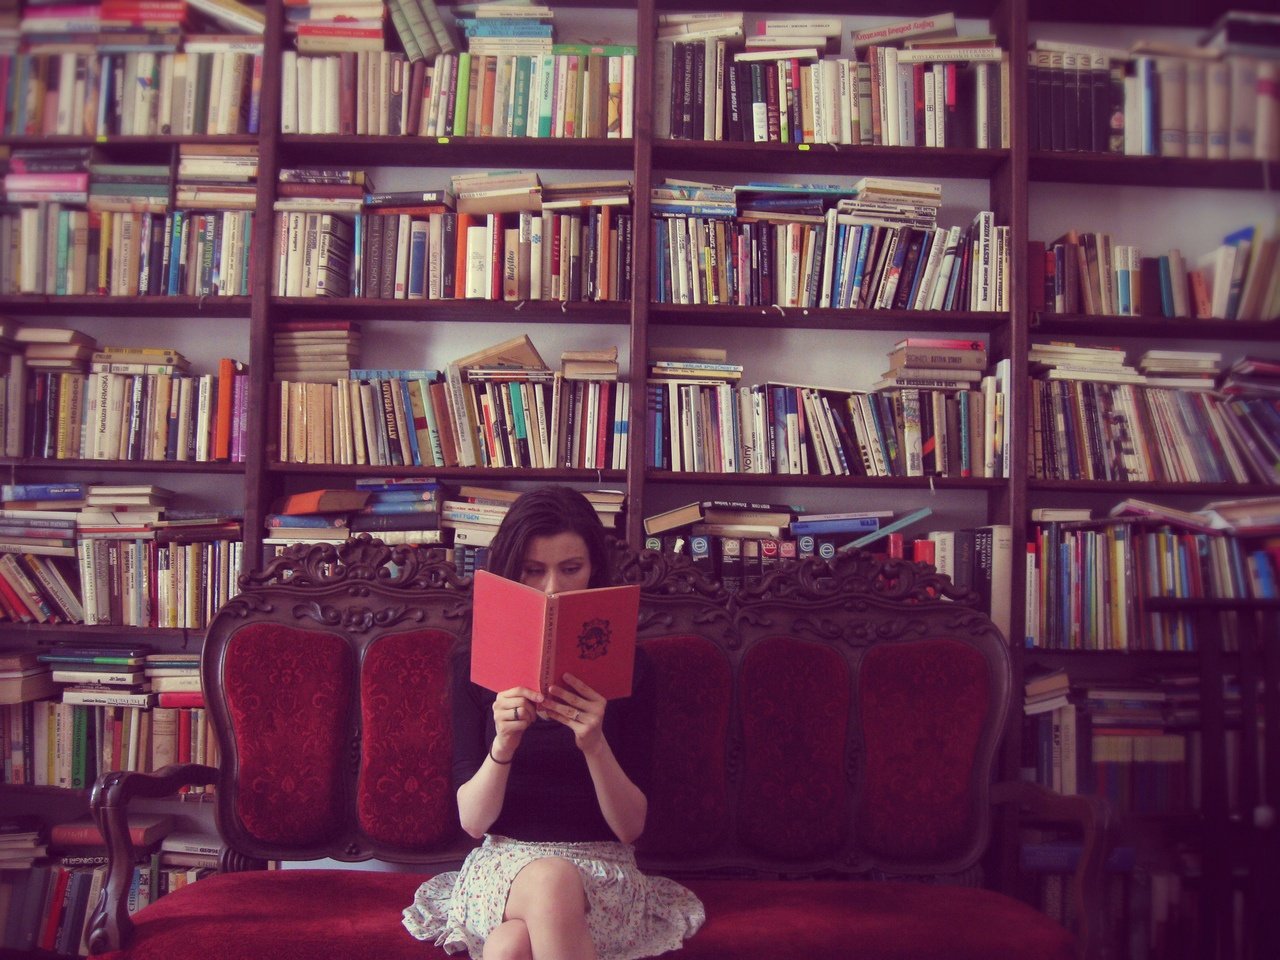 TIPS: Estos son los 10 libros más leídos en el mundo